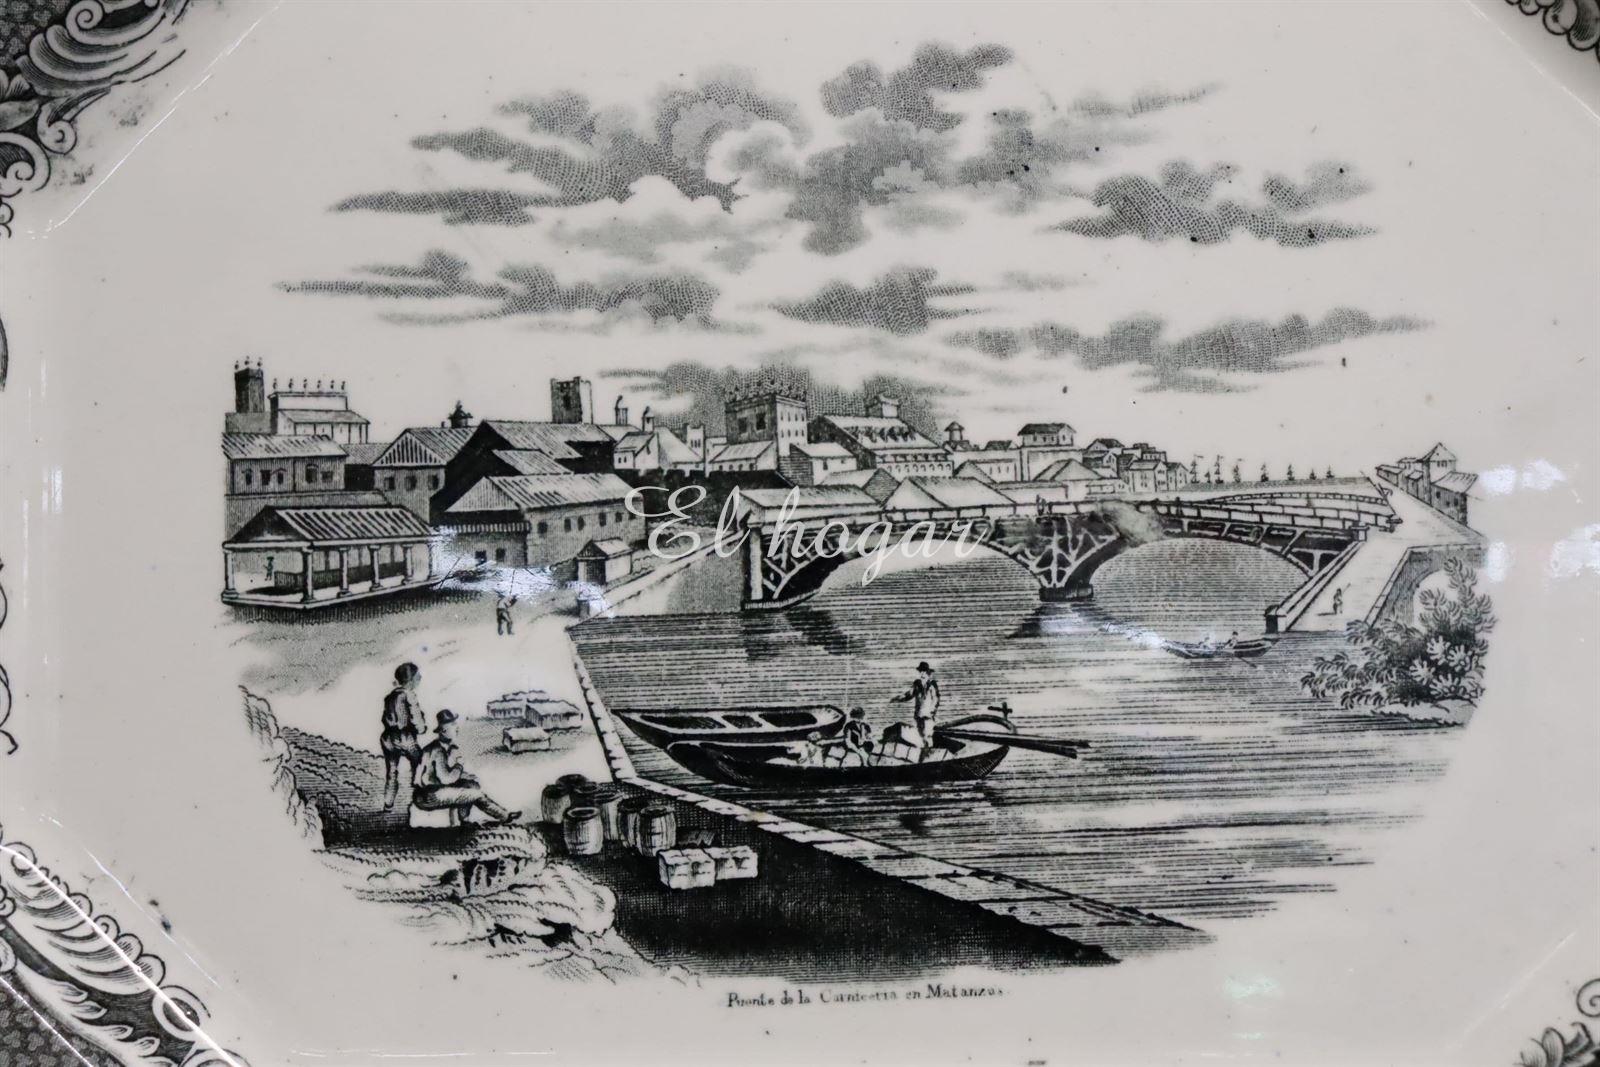 Fuente de Sargadelos 1845-1875 Puente de la carnicería en Matanzas - Imagen 3